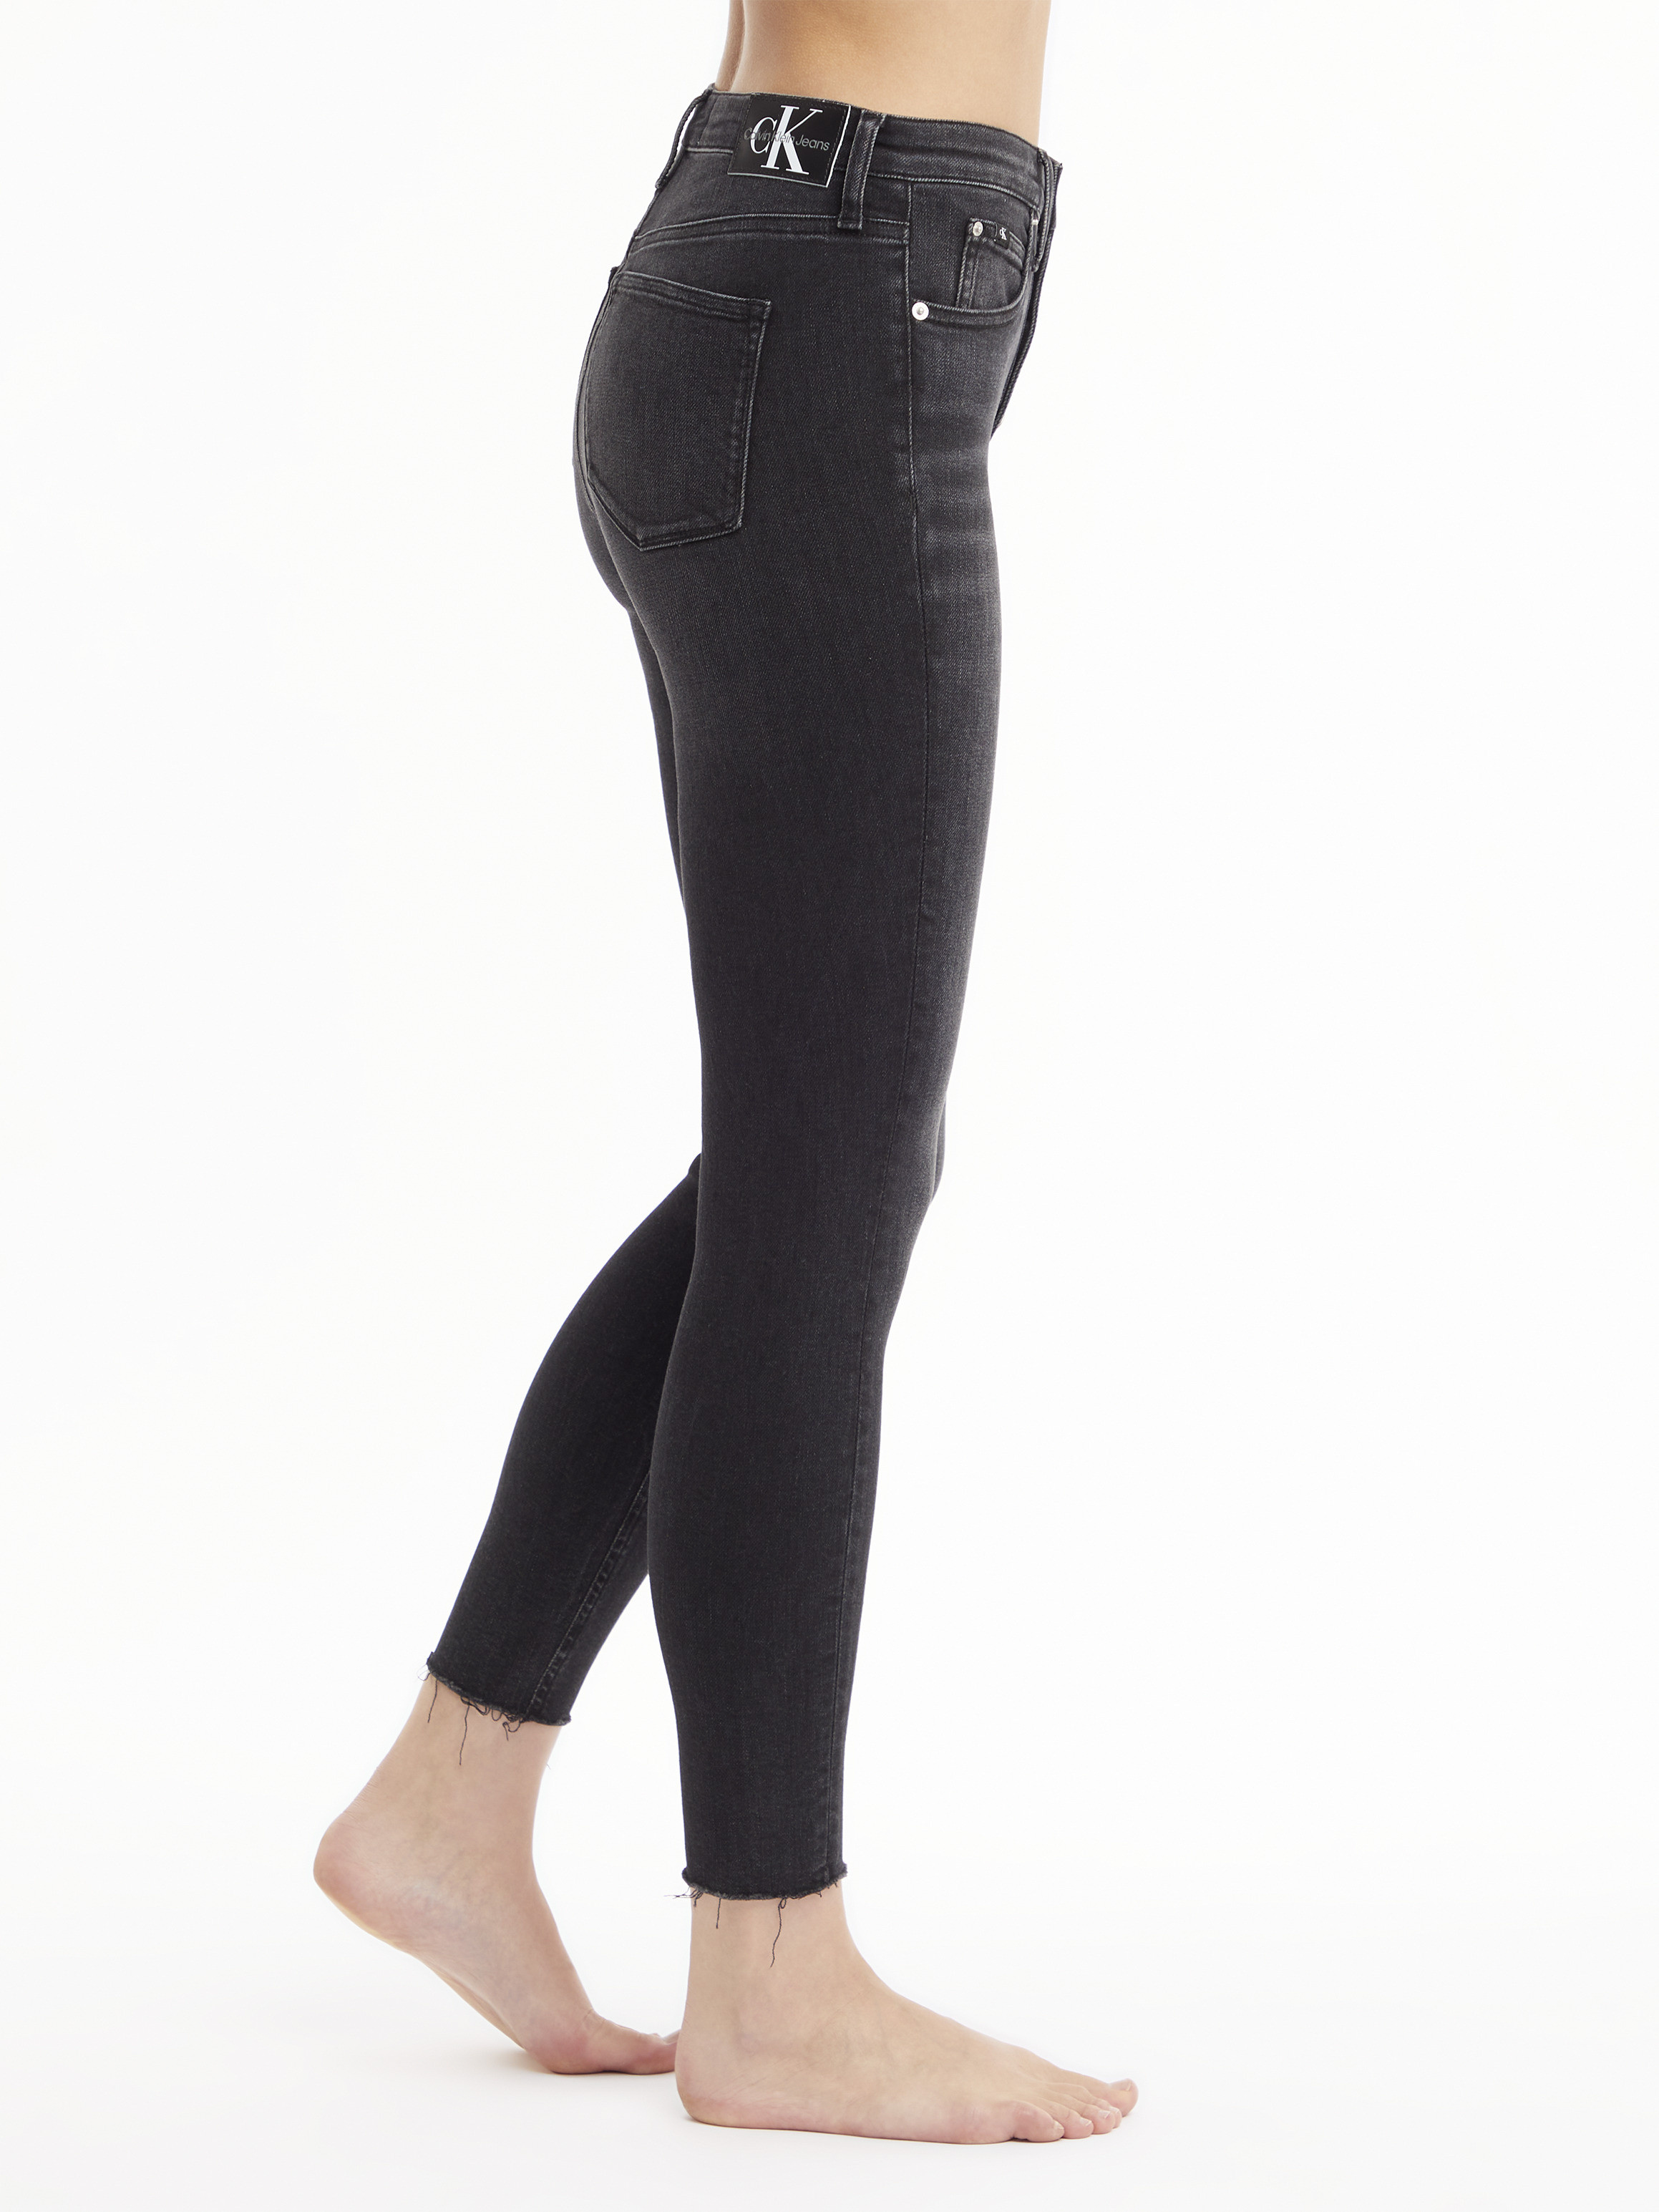 Calvin Klein Jeans - Super skinny five pocket jeans, Black, large image number 5